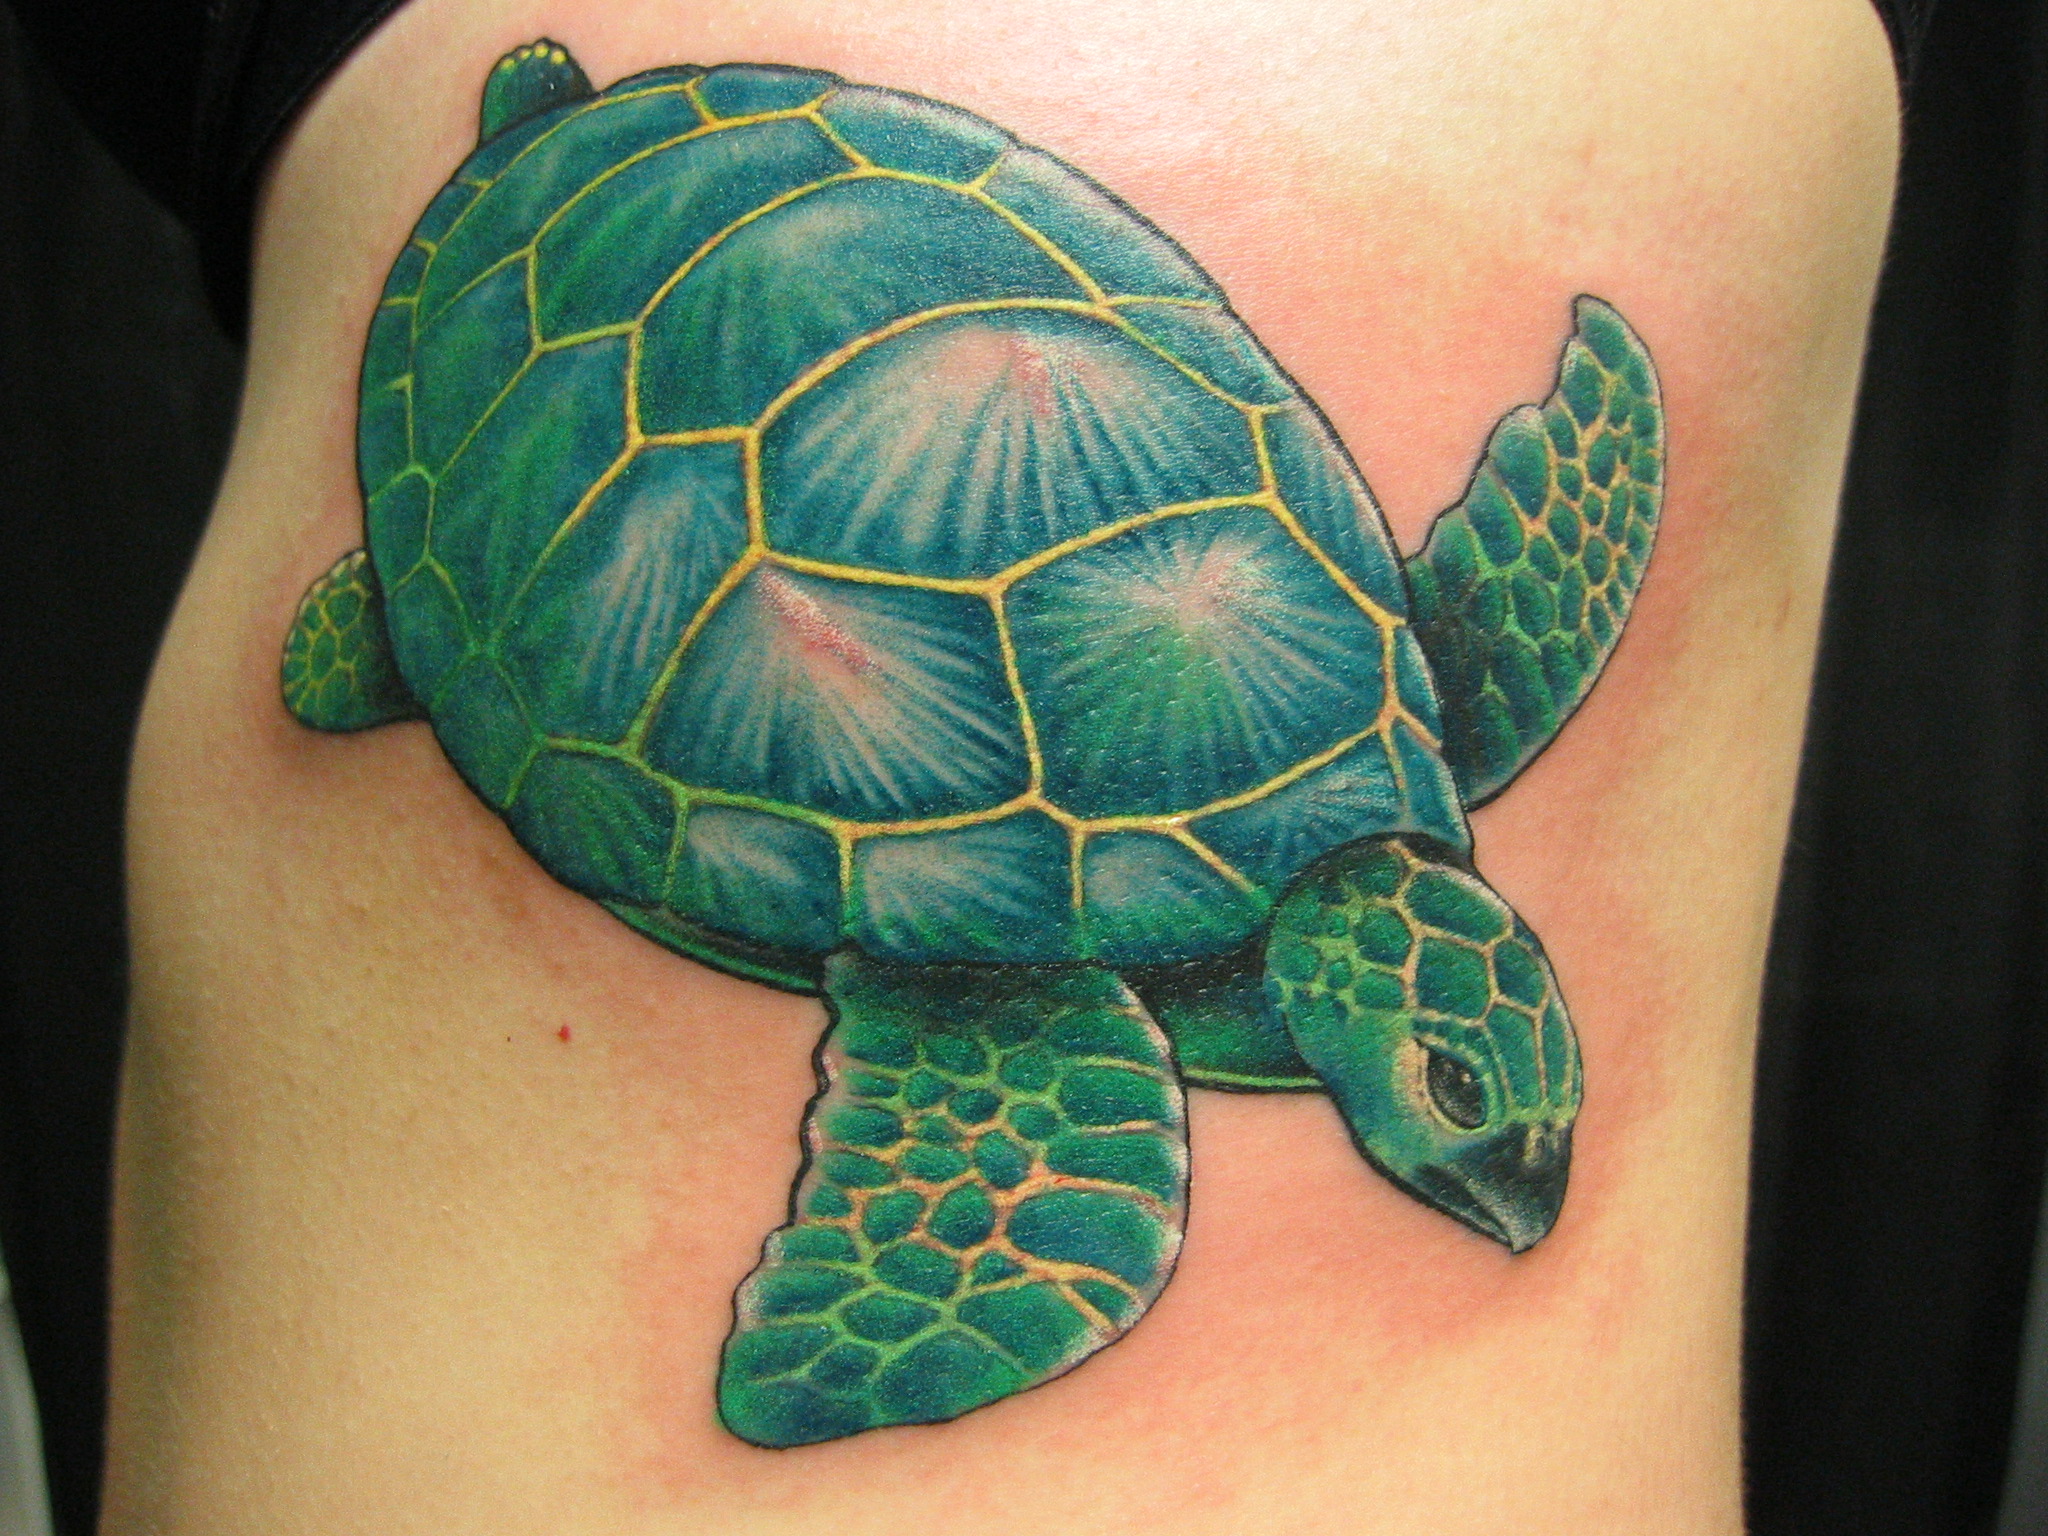 Green sea turtle tattoo